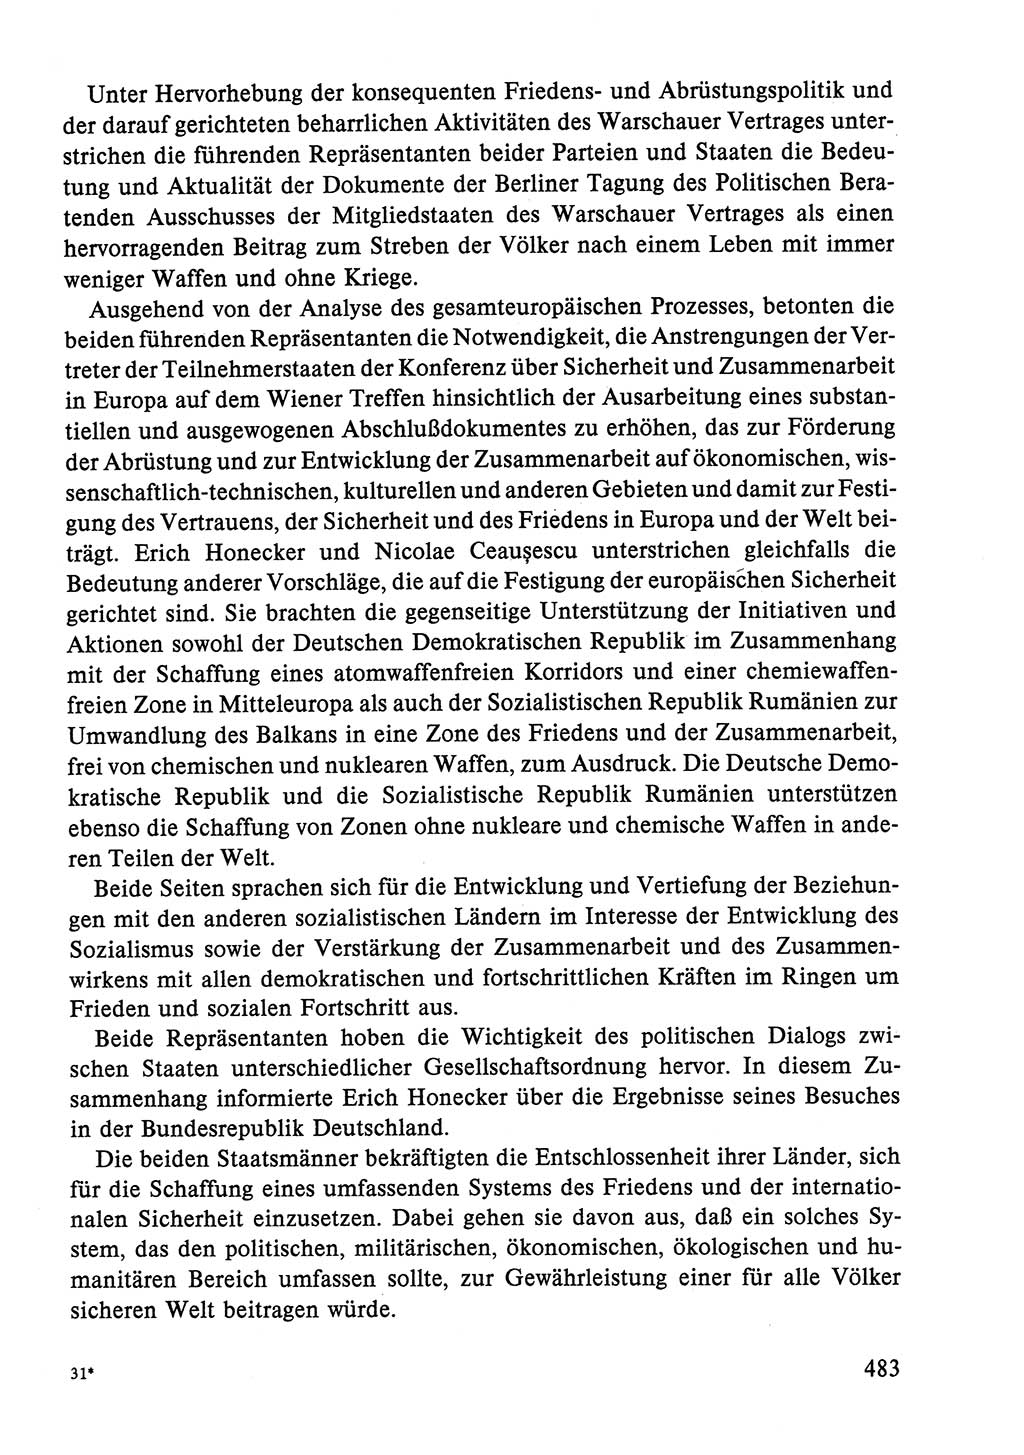 Dokumente der Sozialistischen Einheitspartei Deutschlands (SED) [Deutsche Demokratische Republik (DDR)] 1986-1987, Seite 483 (Dok. SED DDR 1986-1987, S. 483)